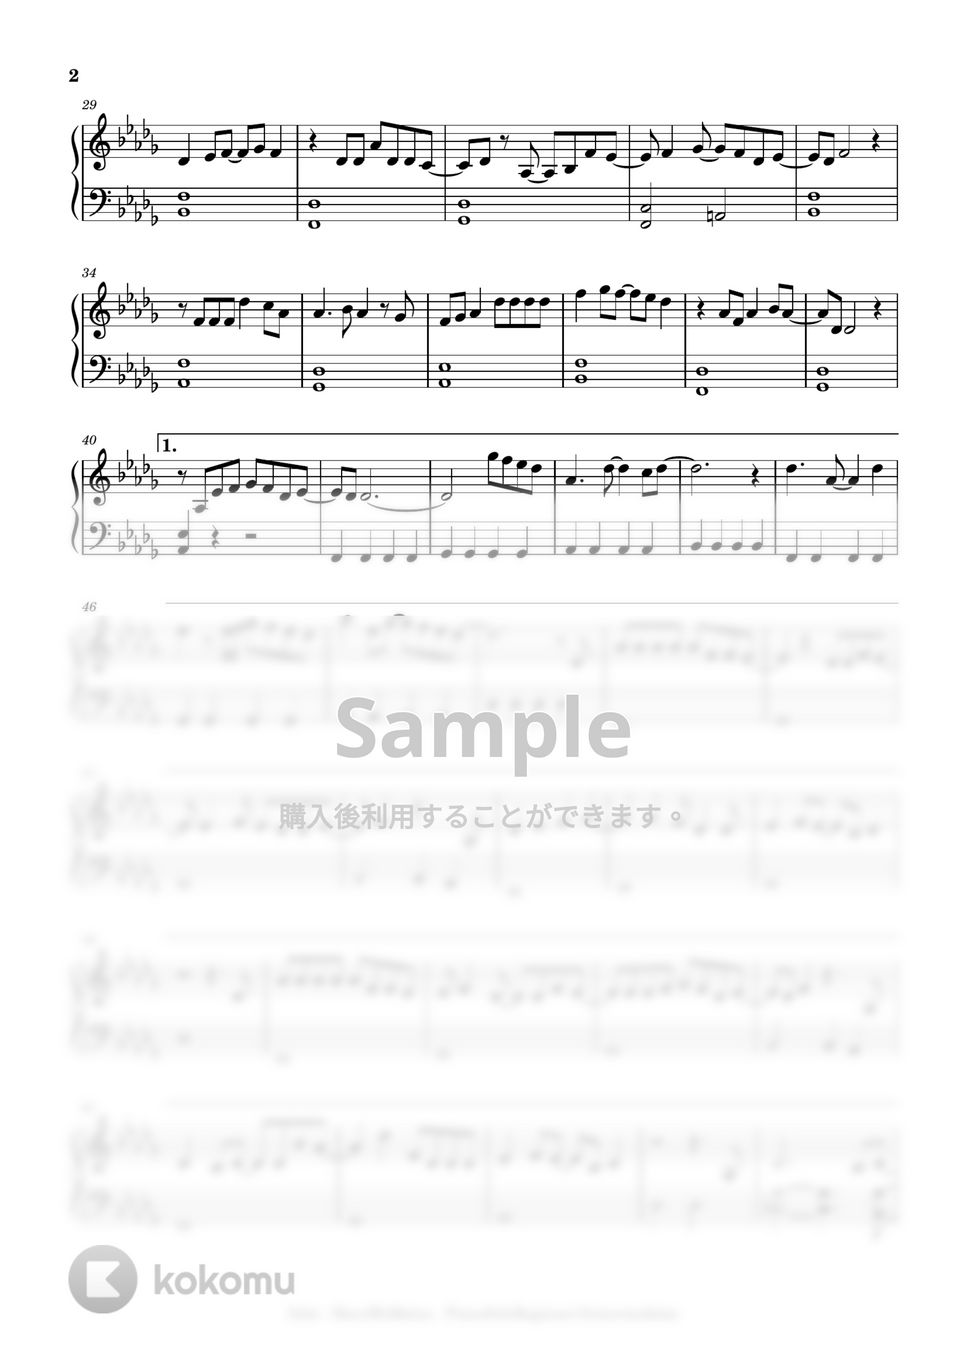 Islet - Haru wo matsu (beginner to intermediate, piano) by Mopianic